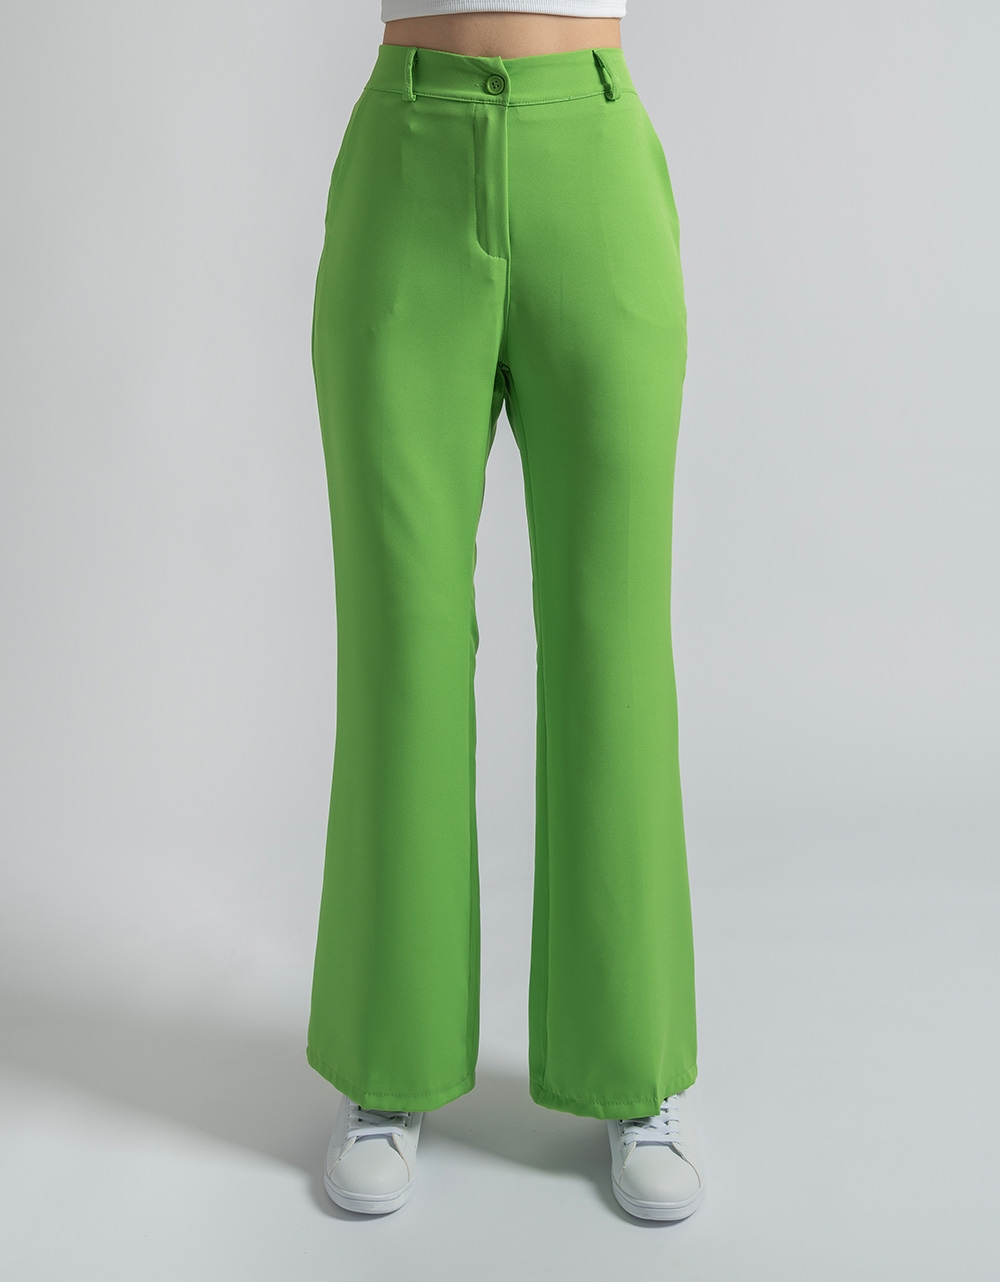 Εικόνα από Σετ μονόχρωμο σακάκι και flared παντελόνι Πράσινο